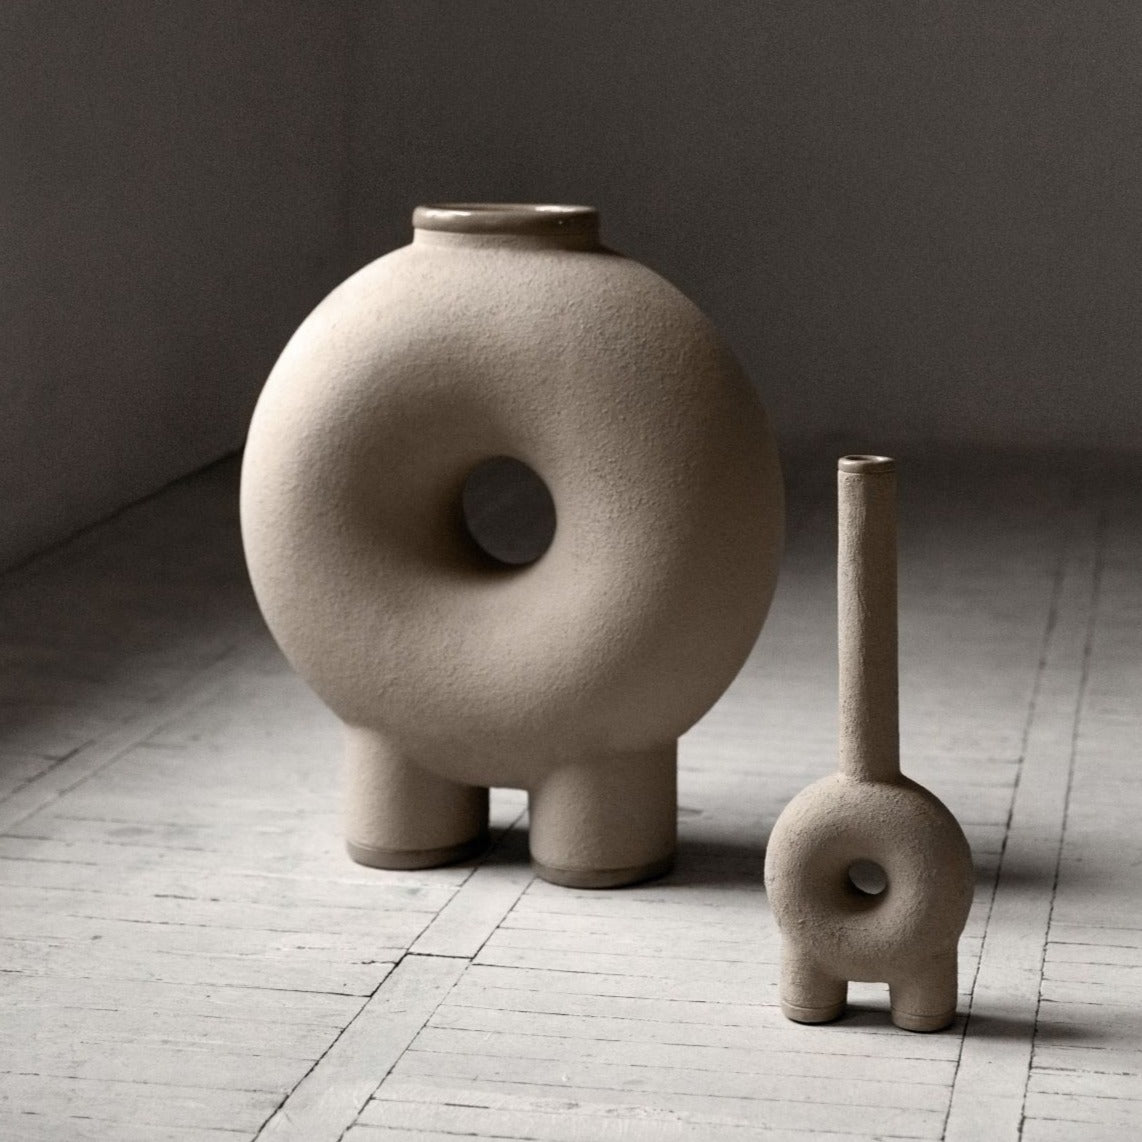 KUMANEC two-legged vase